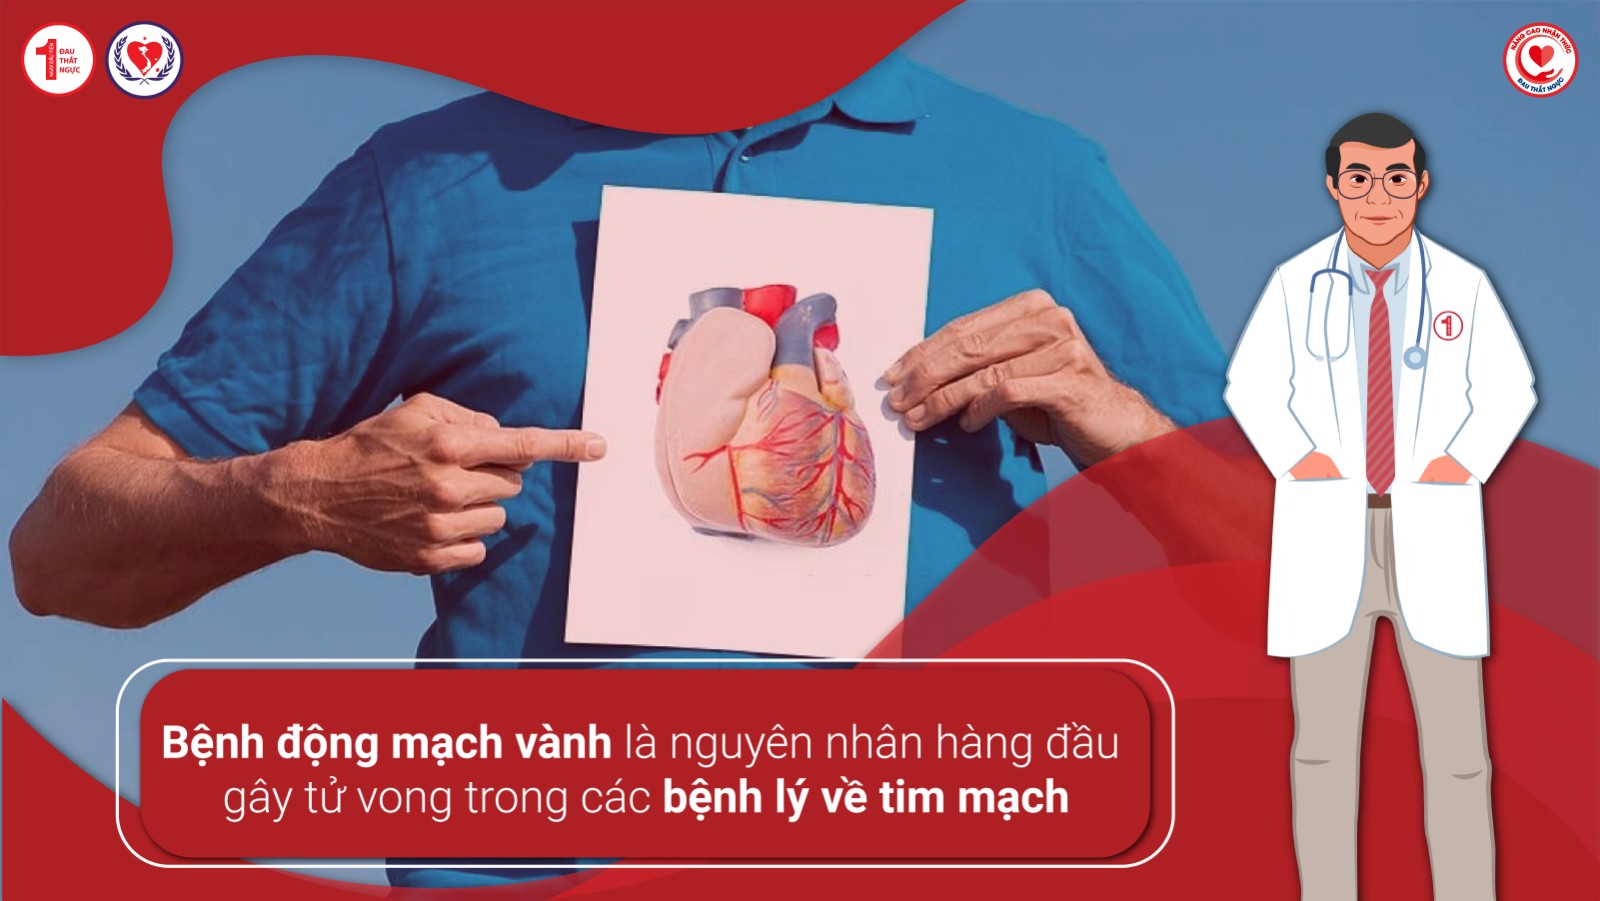 Bệnh động mạch vành là nguyên nhân hàng đầu gây tử vong trong các bệnh lý về tim mạch